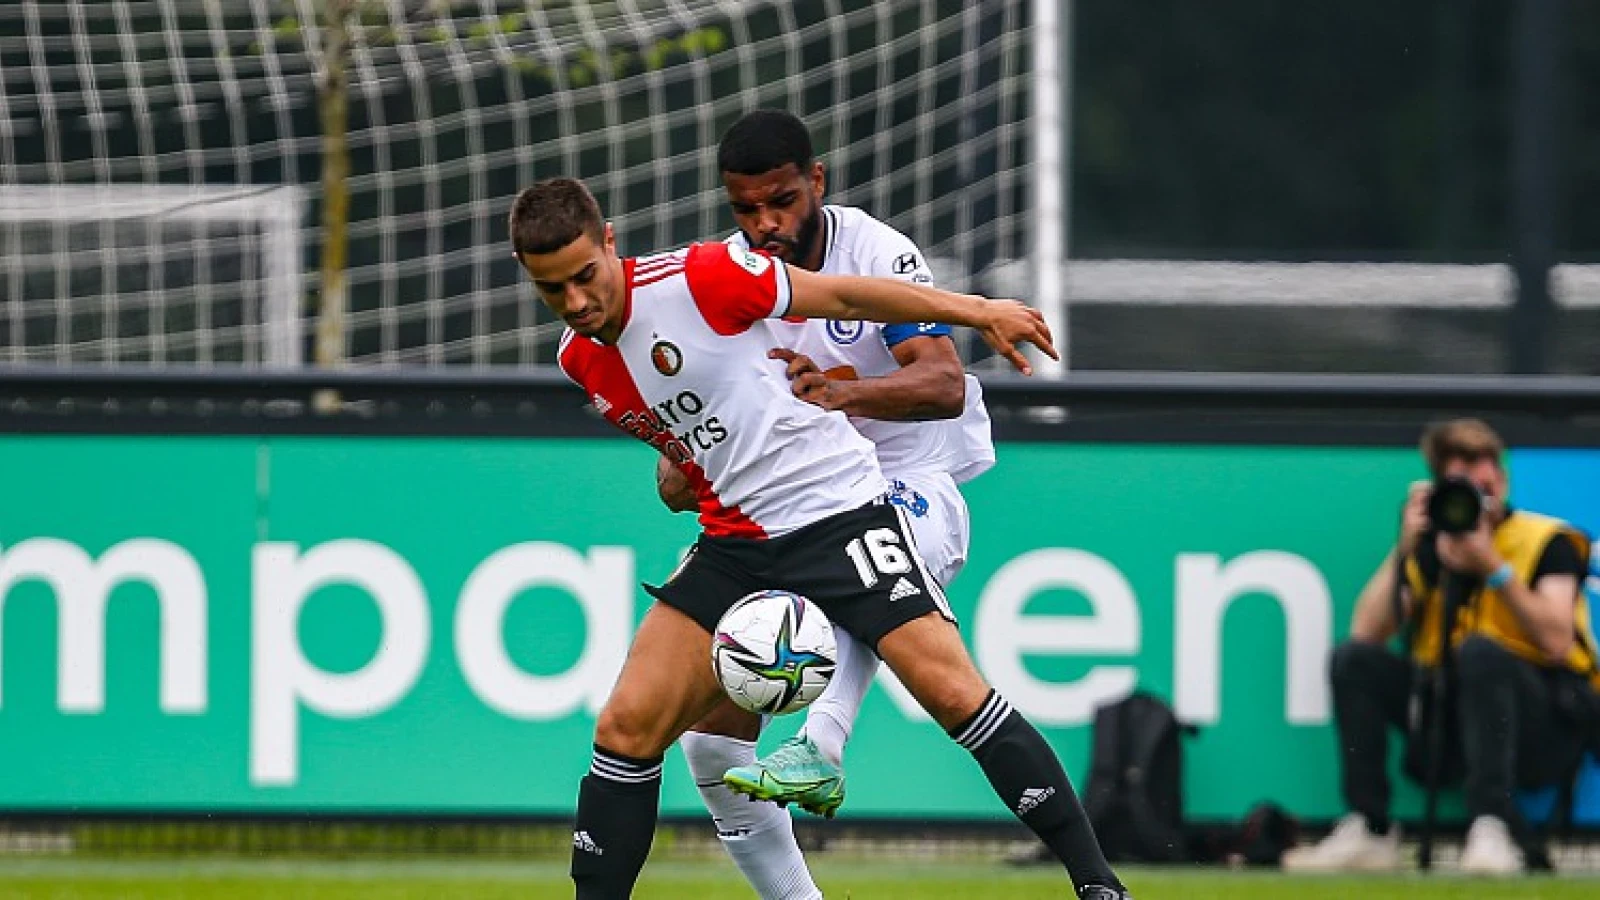 De Gelderlander: 'De Graafschap geïnteresseerd in Feyenoord middenvelder'